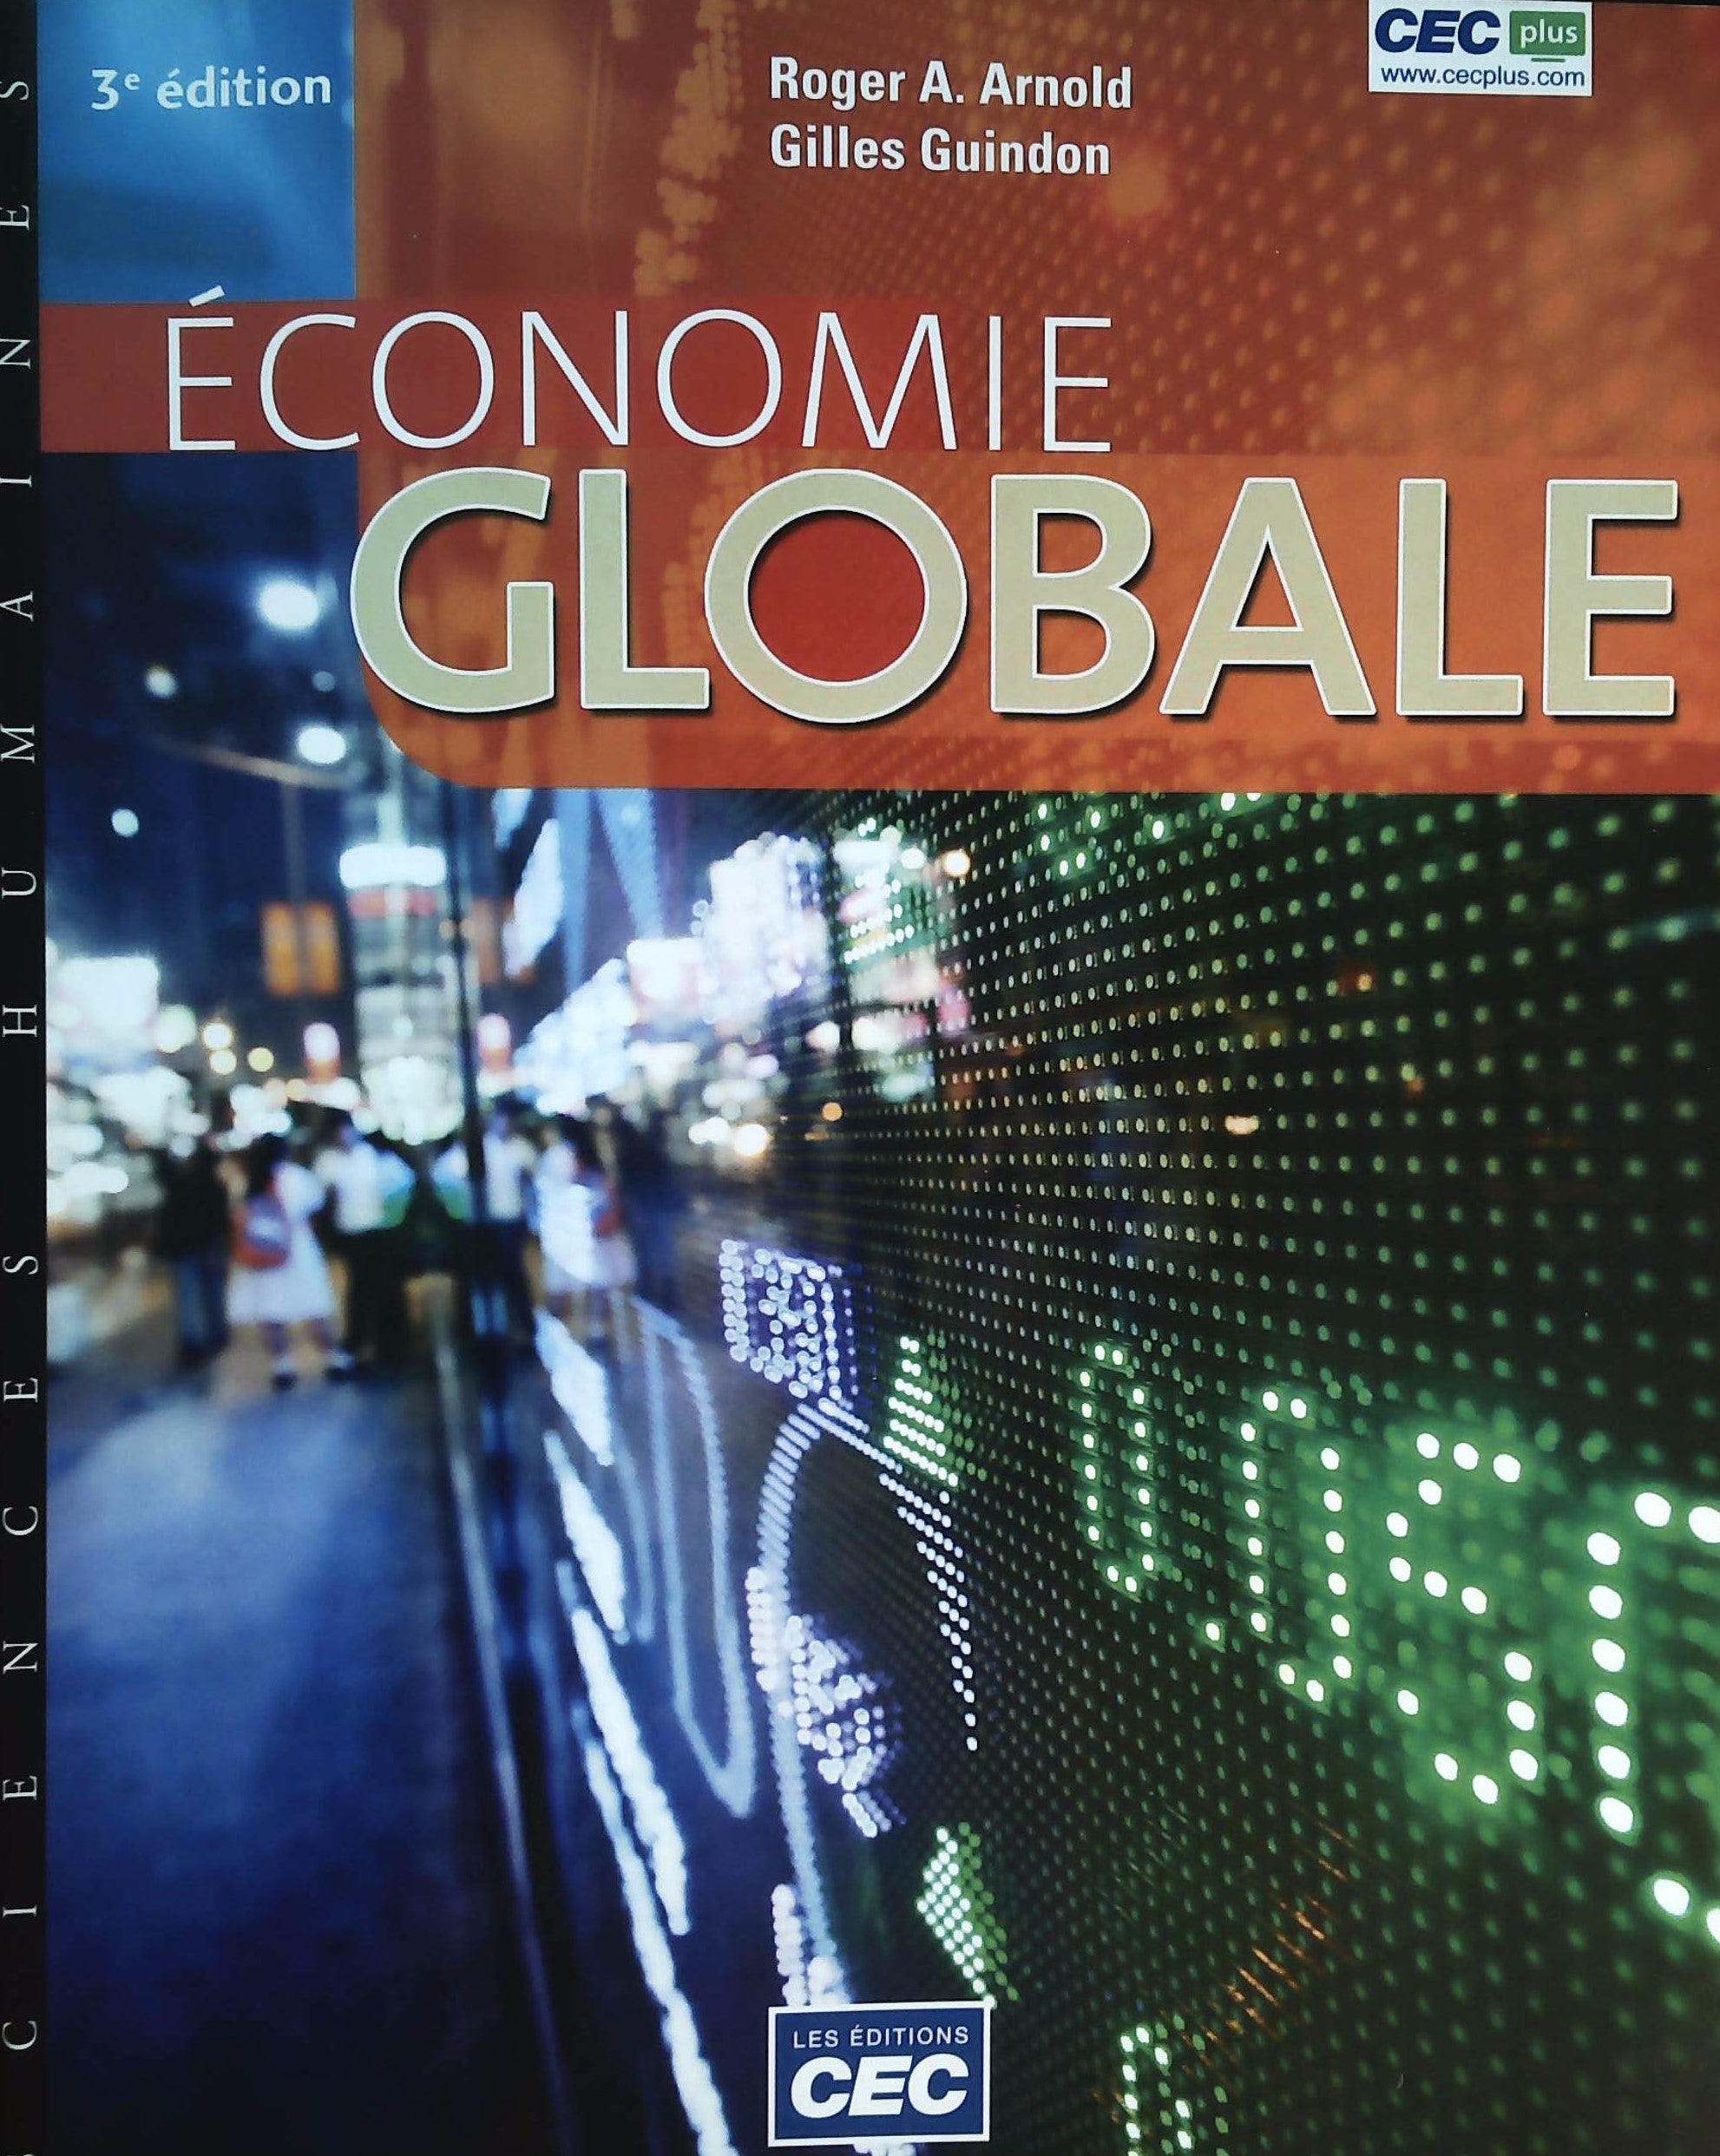 Livre ISBN 2761737326 Économie Globale (3e édition) (Roger A. Arnold)